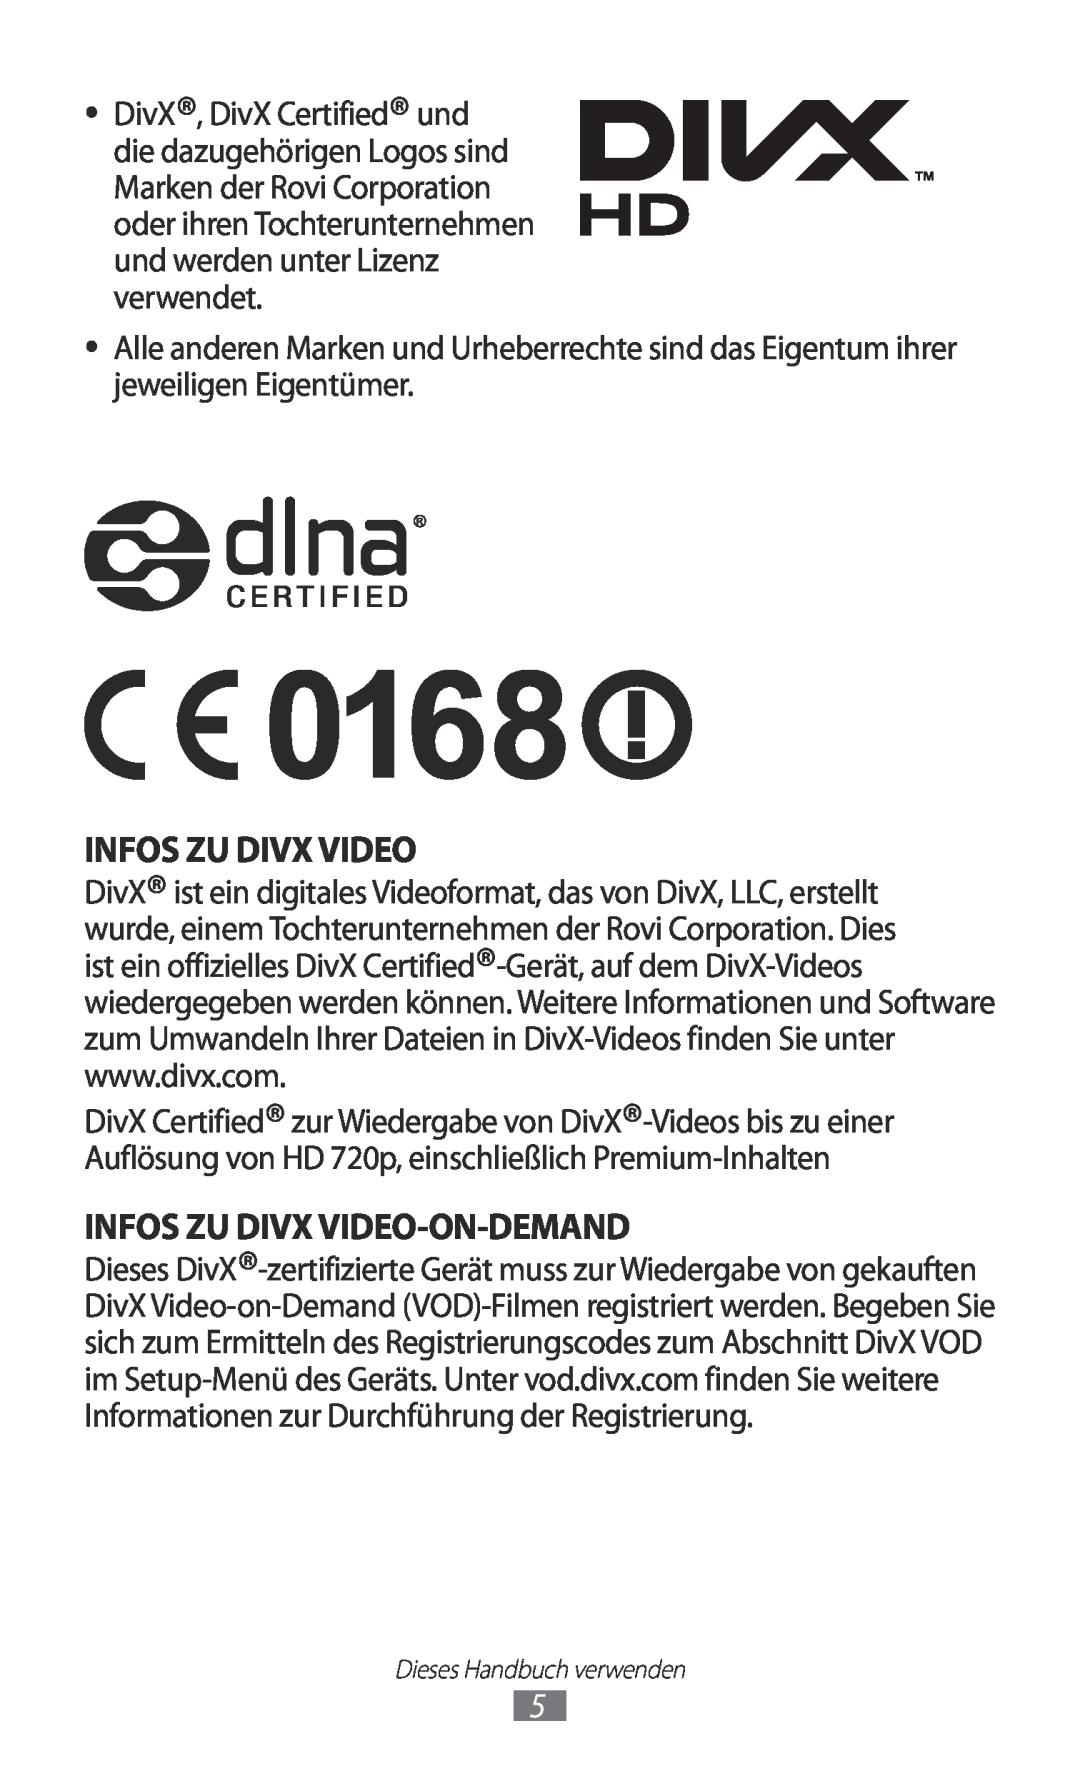 Samsung GT-S8600HKAPRT, GT-S8600HKAVD2, GT-S8600HKAVIA Infos Zu Divx Video-On-Demand, und werden unter Lizenz verwendet 